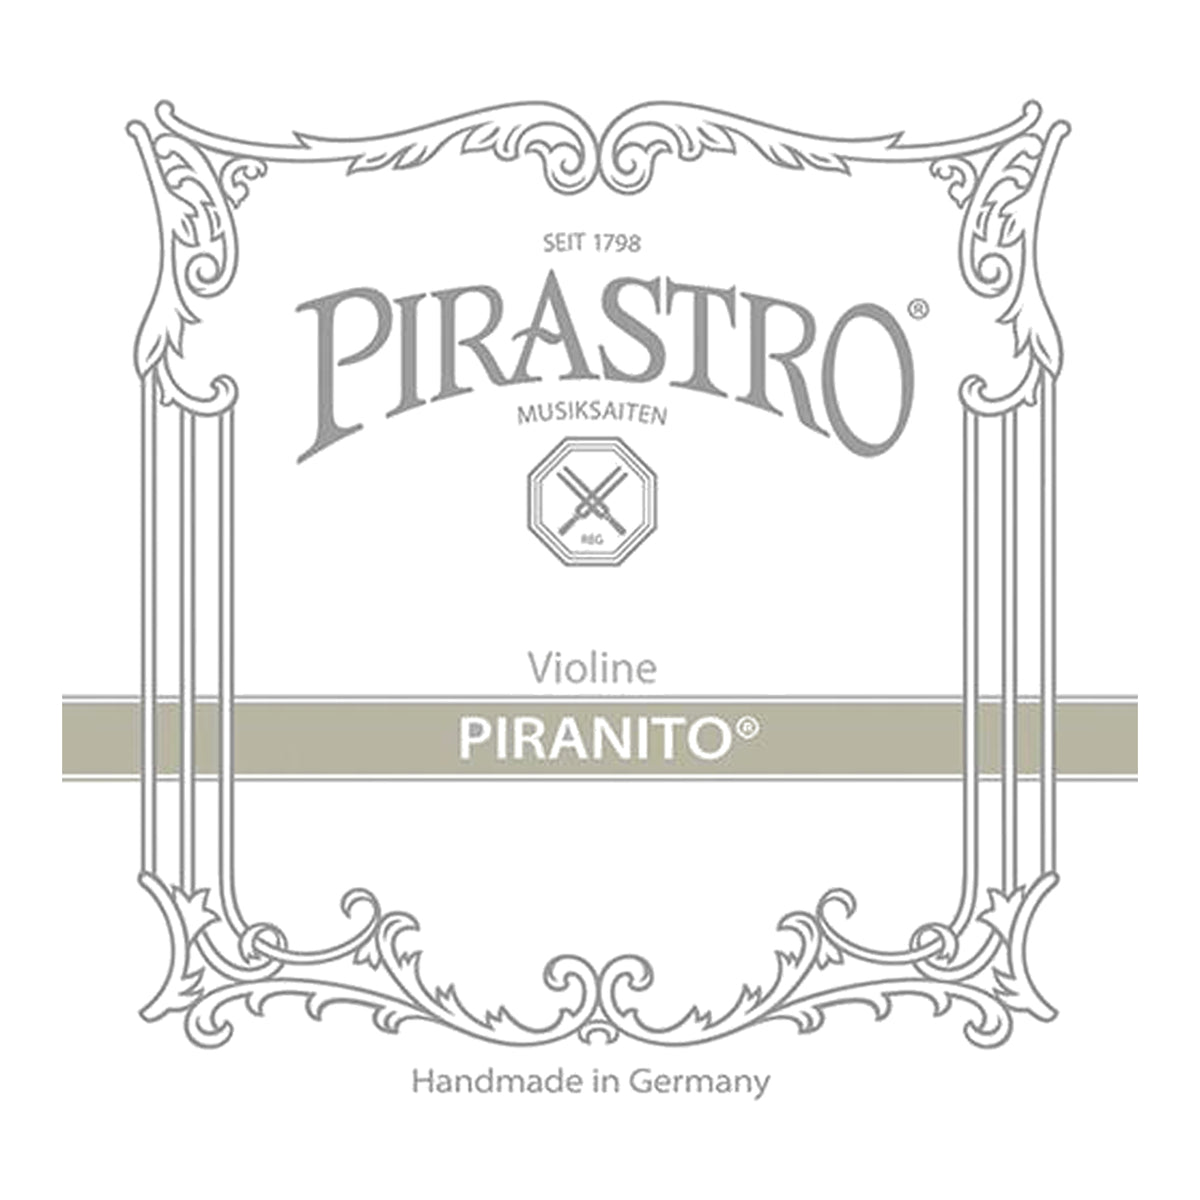 Pirastro Piranito Violin Strings Set 1/4 to 1/8